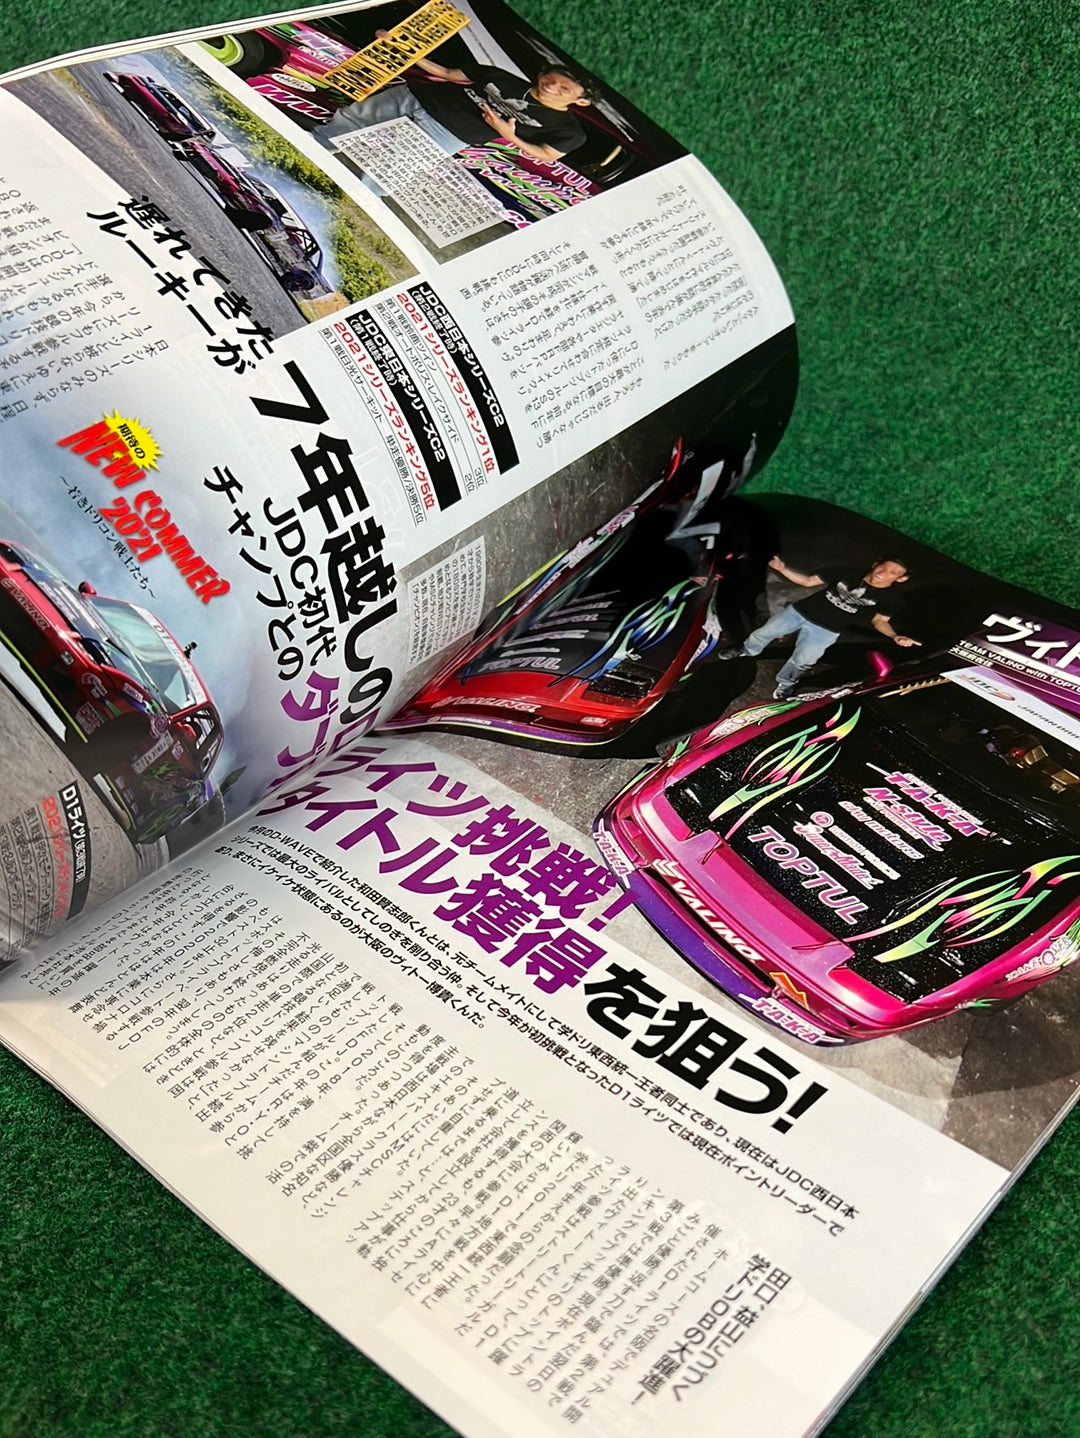 Drift Tengoku Magazine -  August 2021